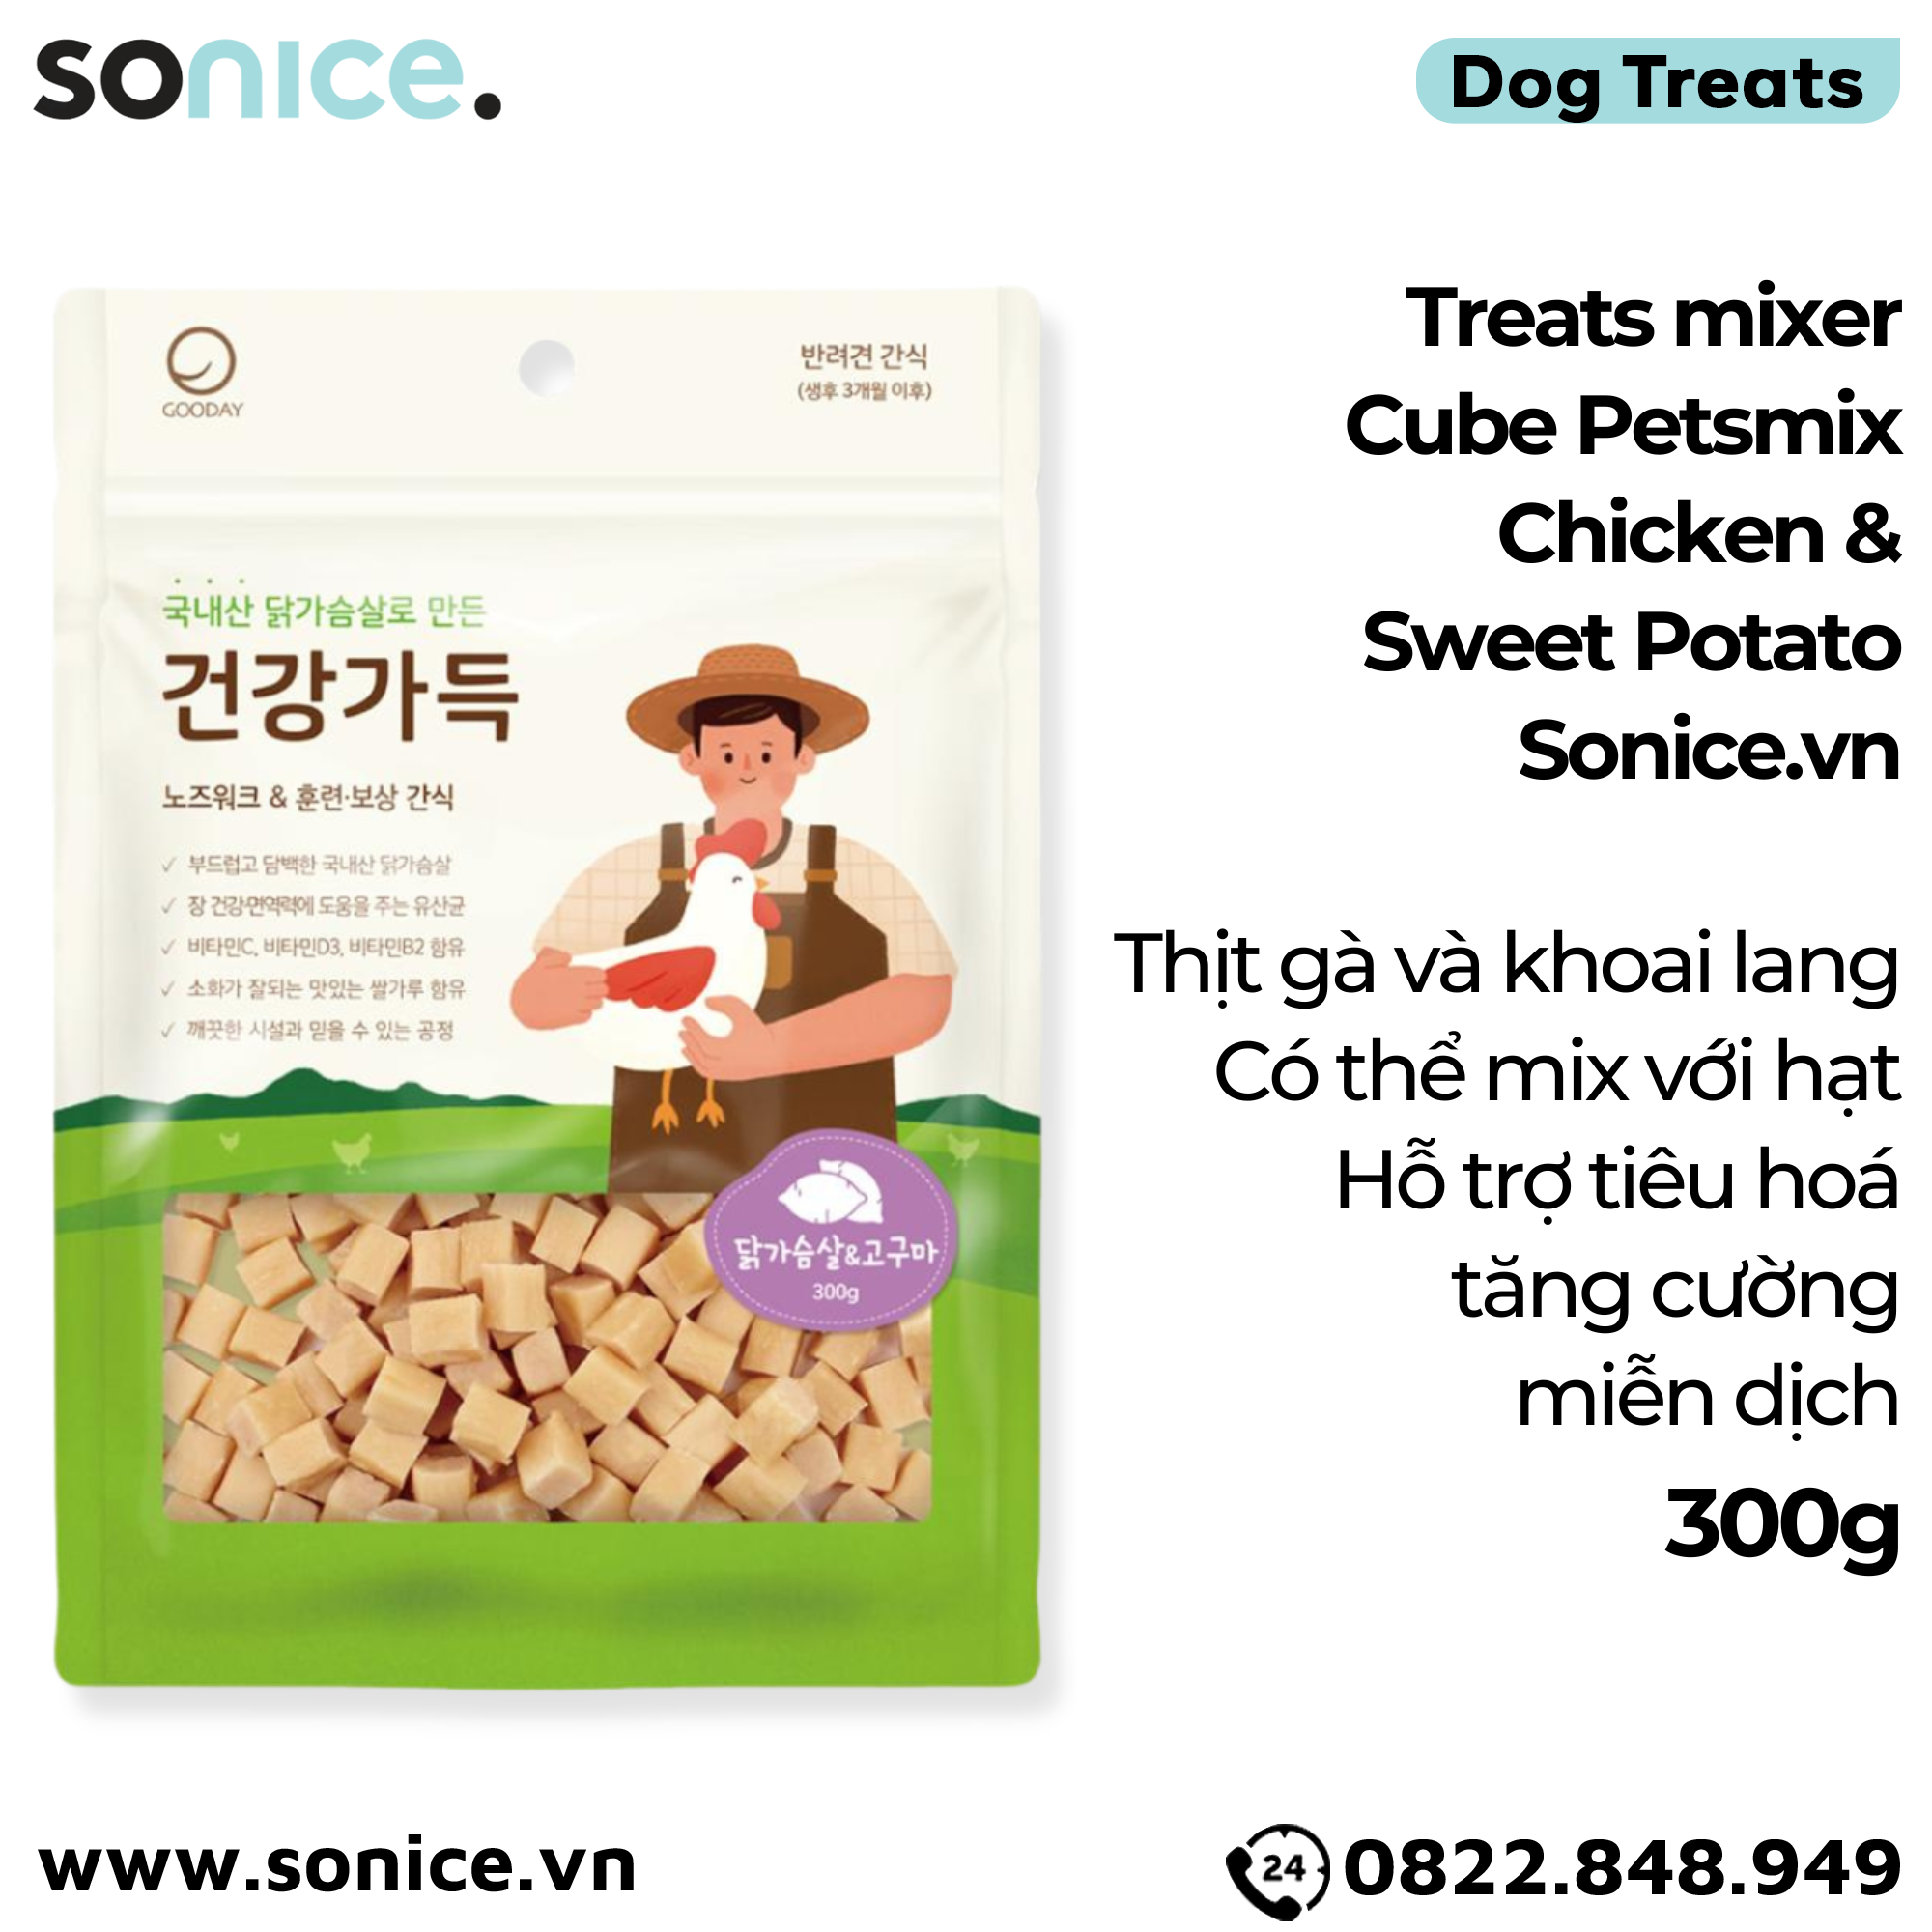  Treats mixer Cube Petsmix Chicken & Sweet Potato 300g Korea - Thịt gà và khoai lang, có thể mix với hạt, hỗ trợ tiêu hoá, tăng cường miễn dịch SONICE. 